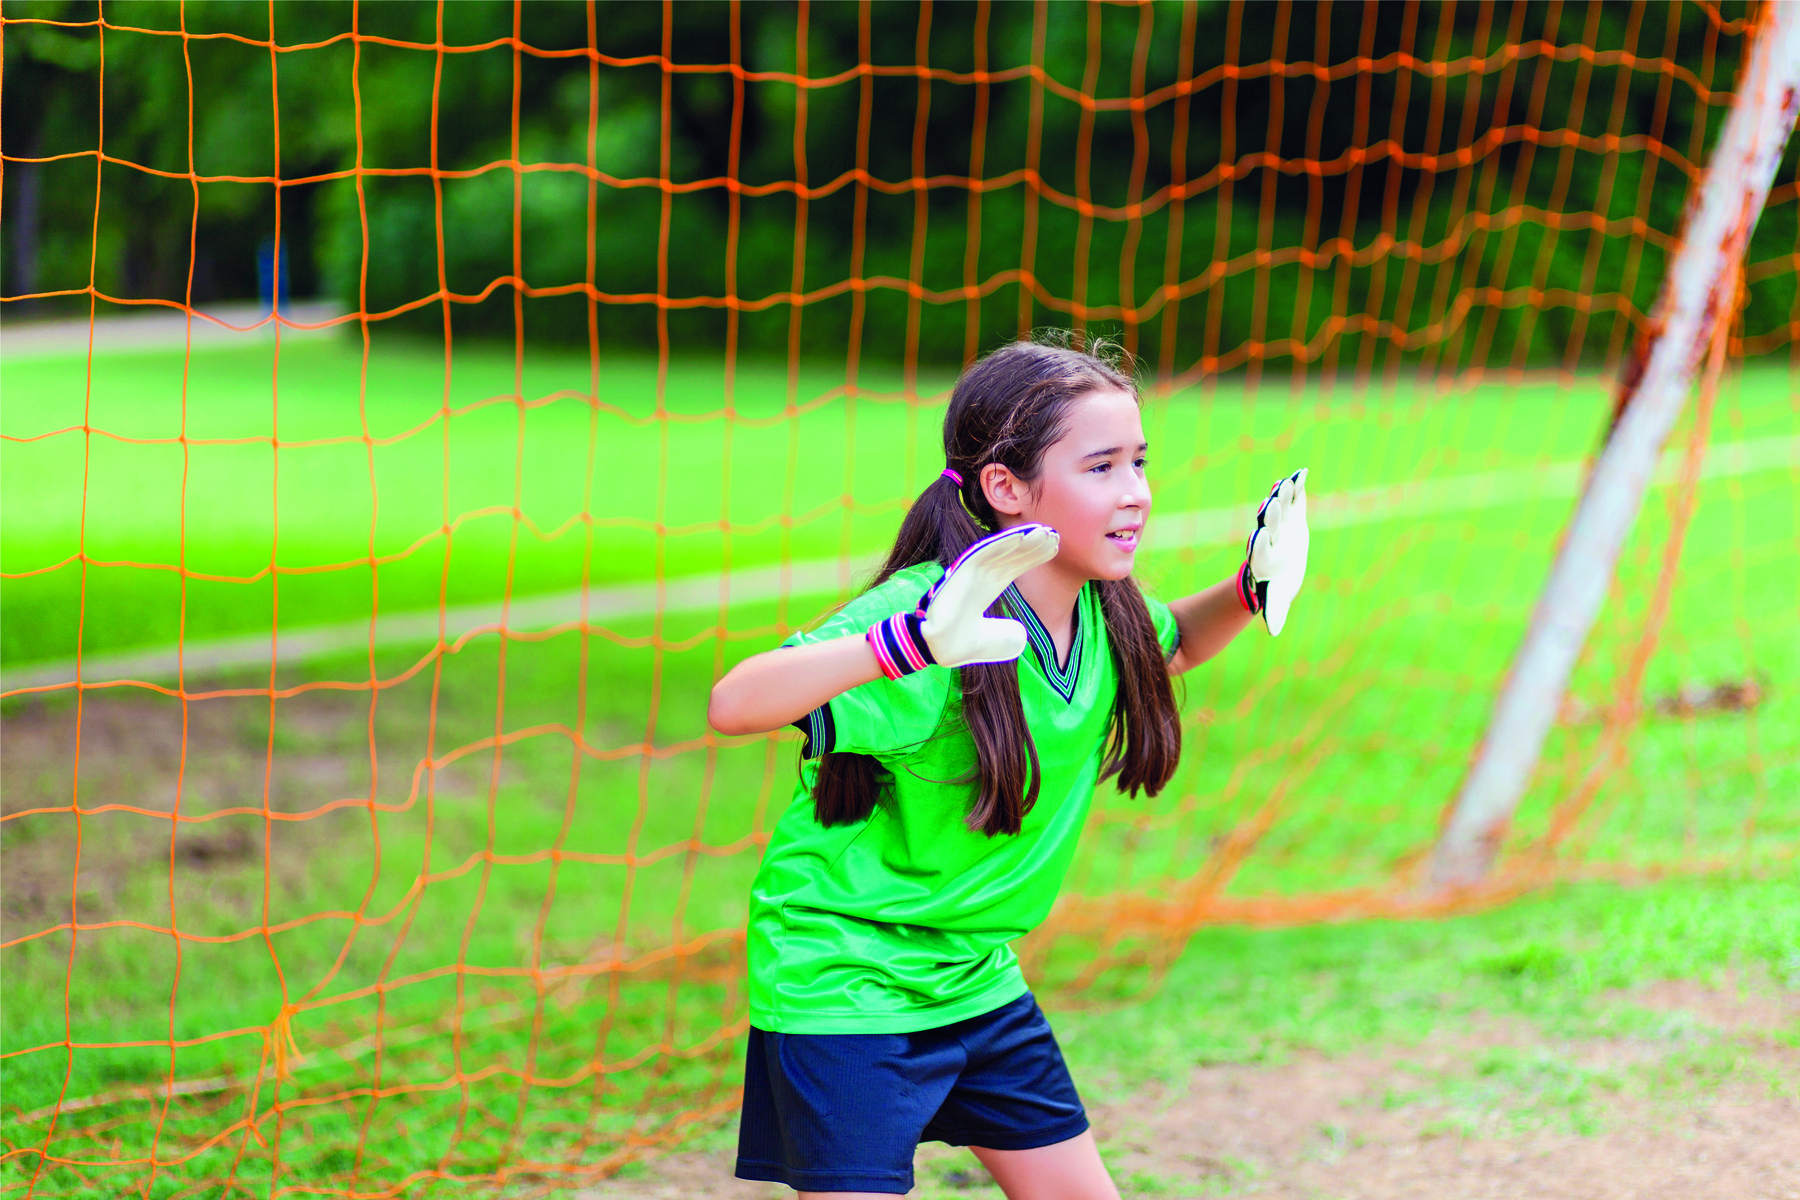 Fotografia. Uma menina de cabelo liso e preso em maria chiquinha, usando um uniforme verde, uma luva branca em cada mão. Ela está na frente de um gol, com as duas mãos espalmadas à frente do corpo.